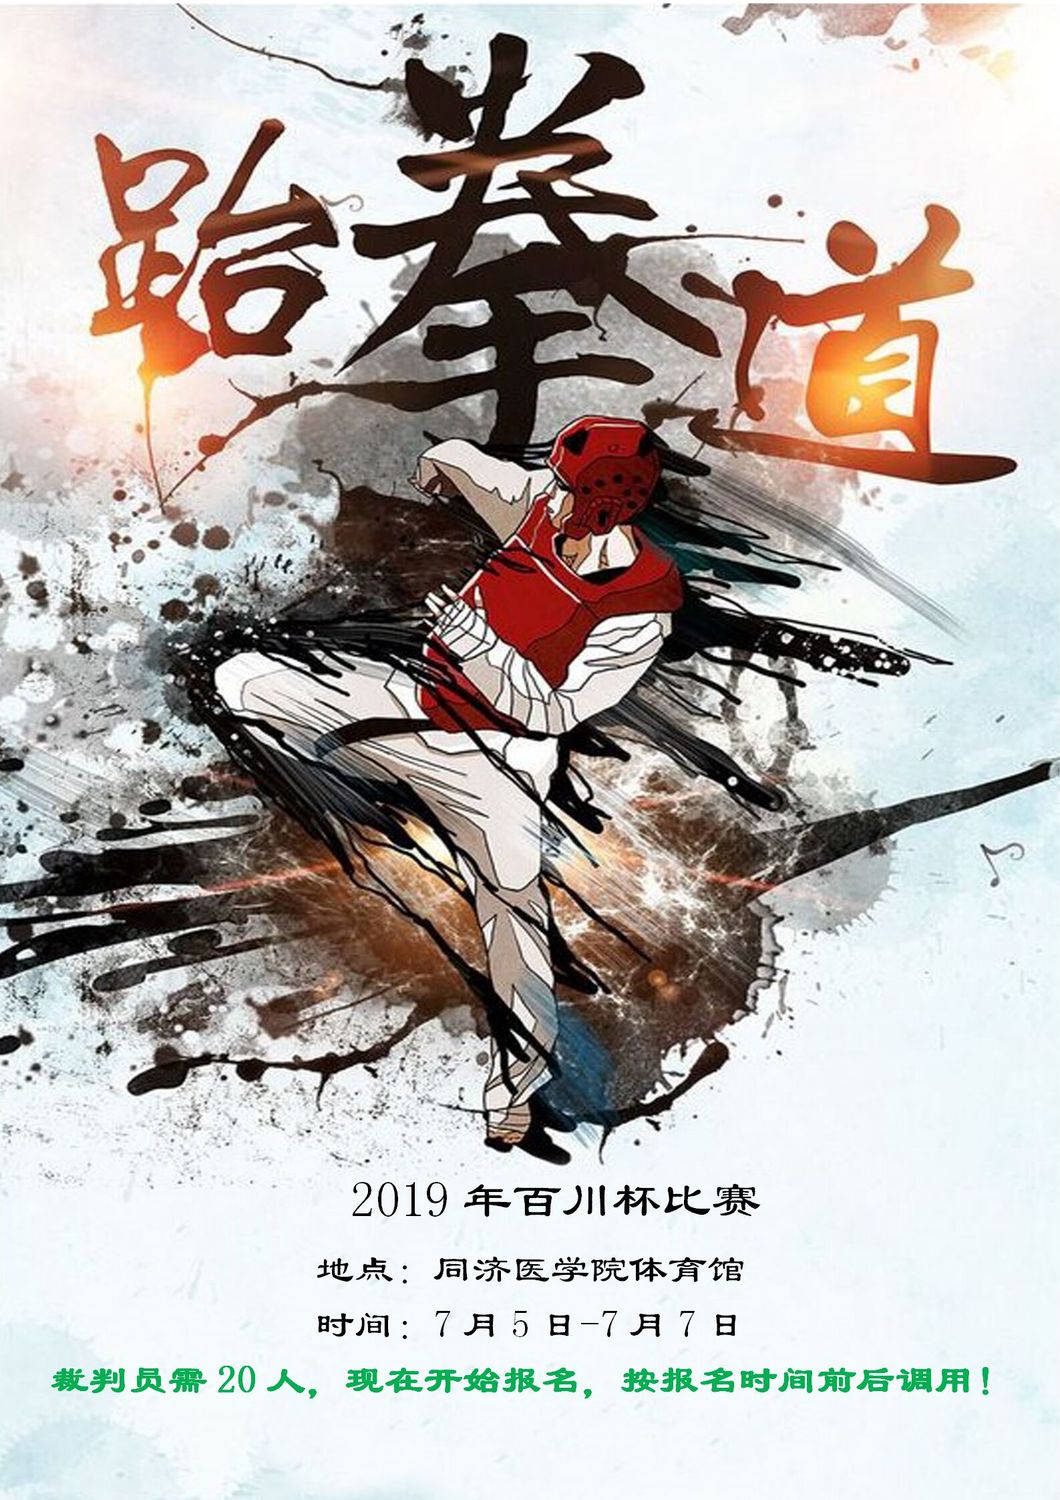 赛事3-2019年中国中学生跆拳道联赛6月30日-7月5日_01.jpg